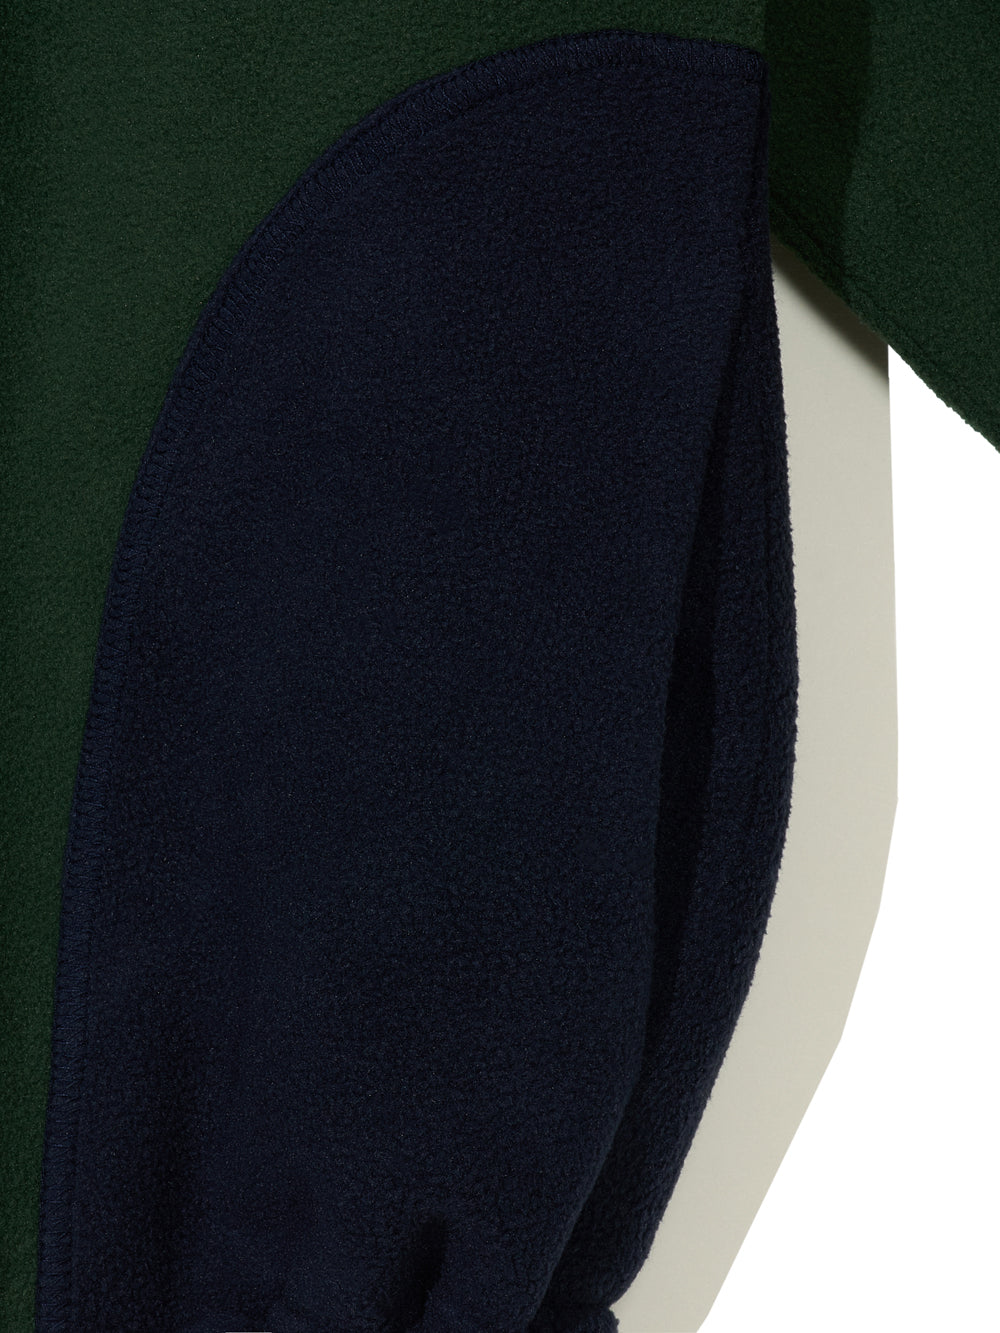 Curved Block Fleece Zip-Up Jacket in Green